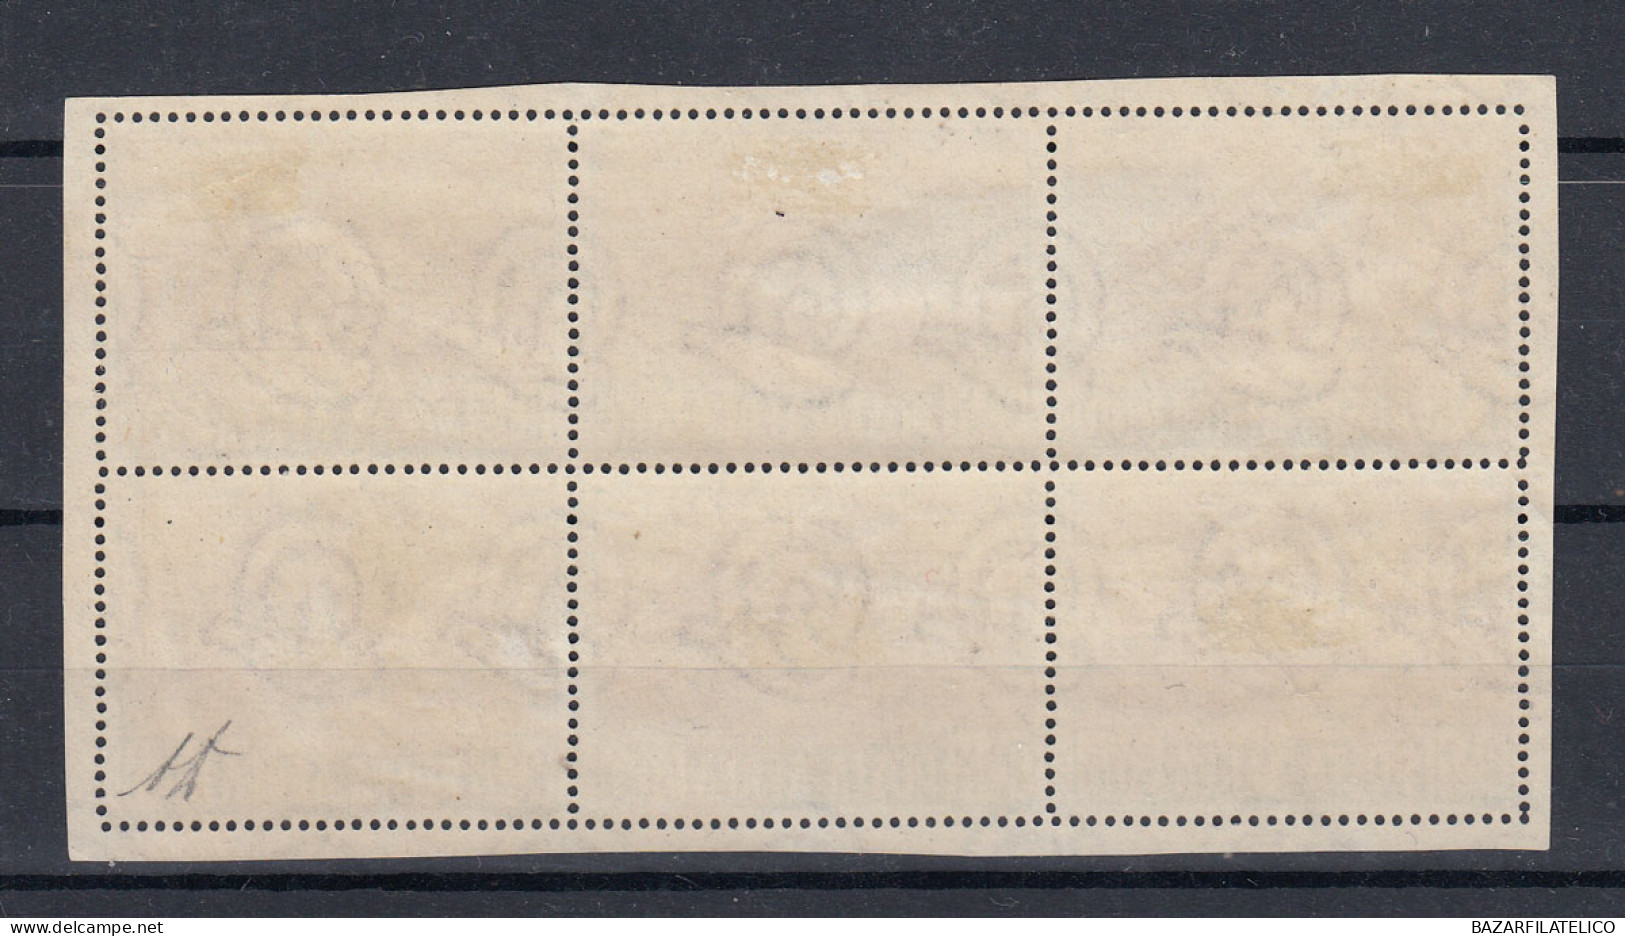 SAN MARINO 1951 VEDUTA 500 LIRE BLOCCO 6 V. USATI PERFETTO SPL FIRMATO DIENA - Used Stamps